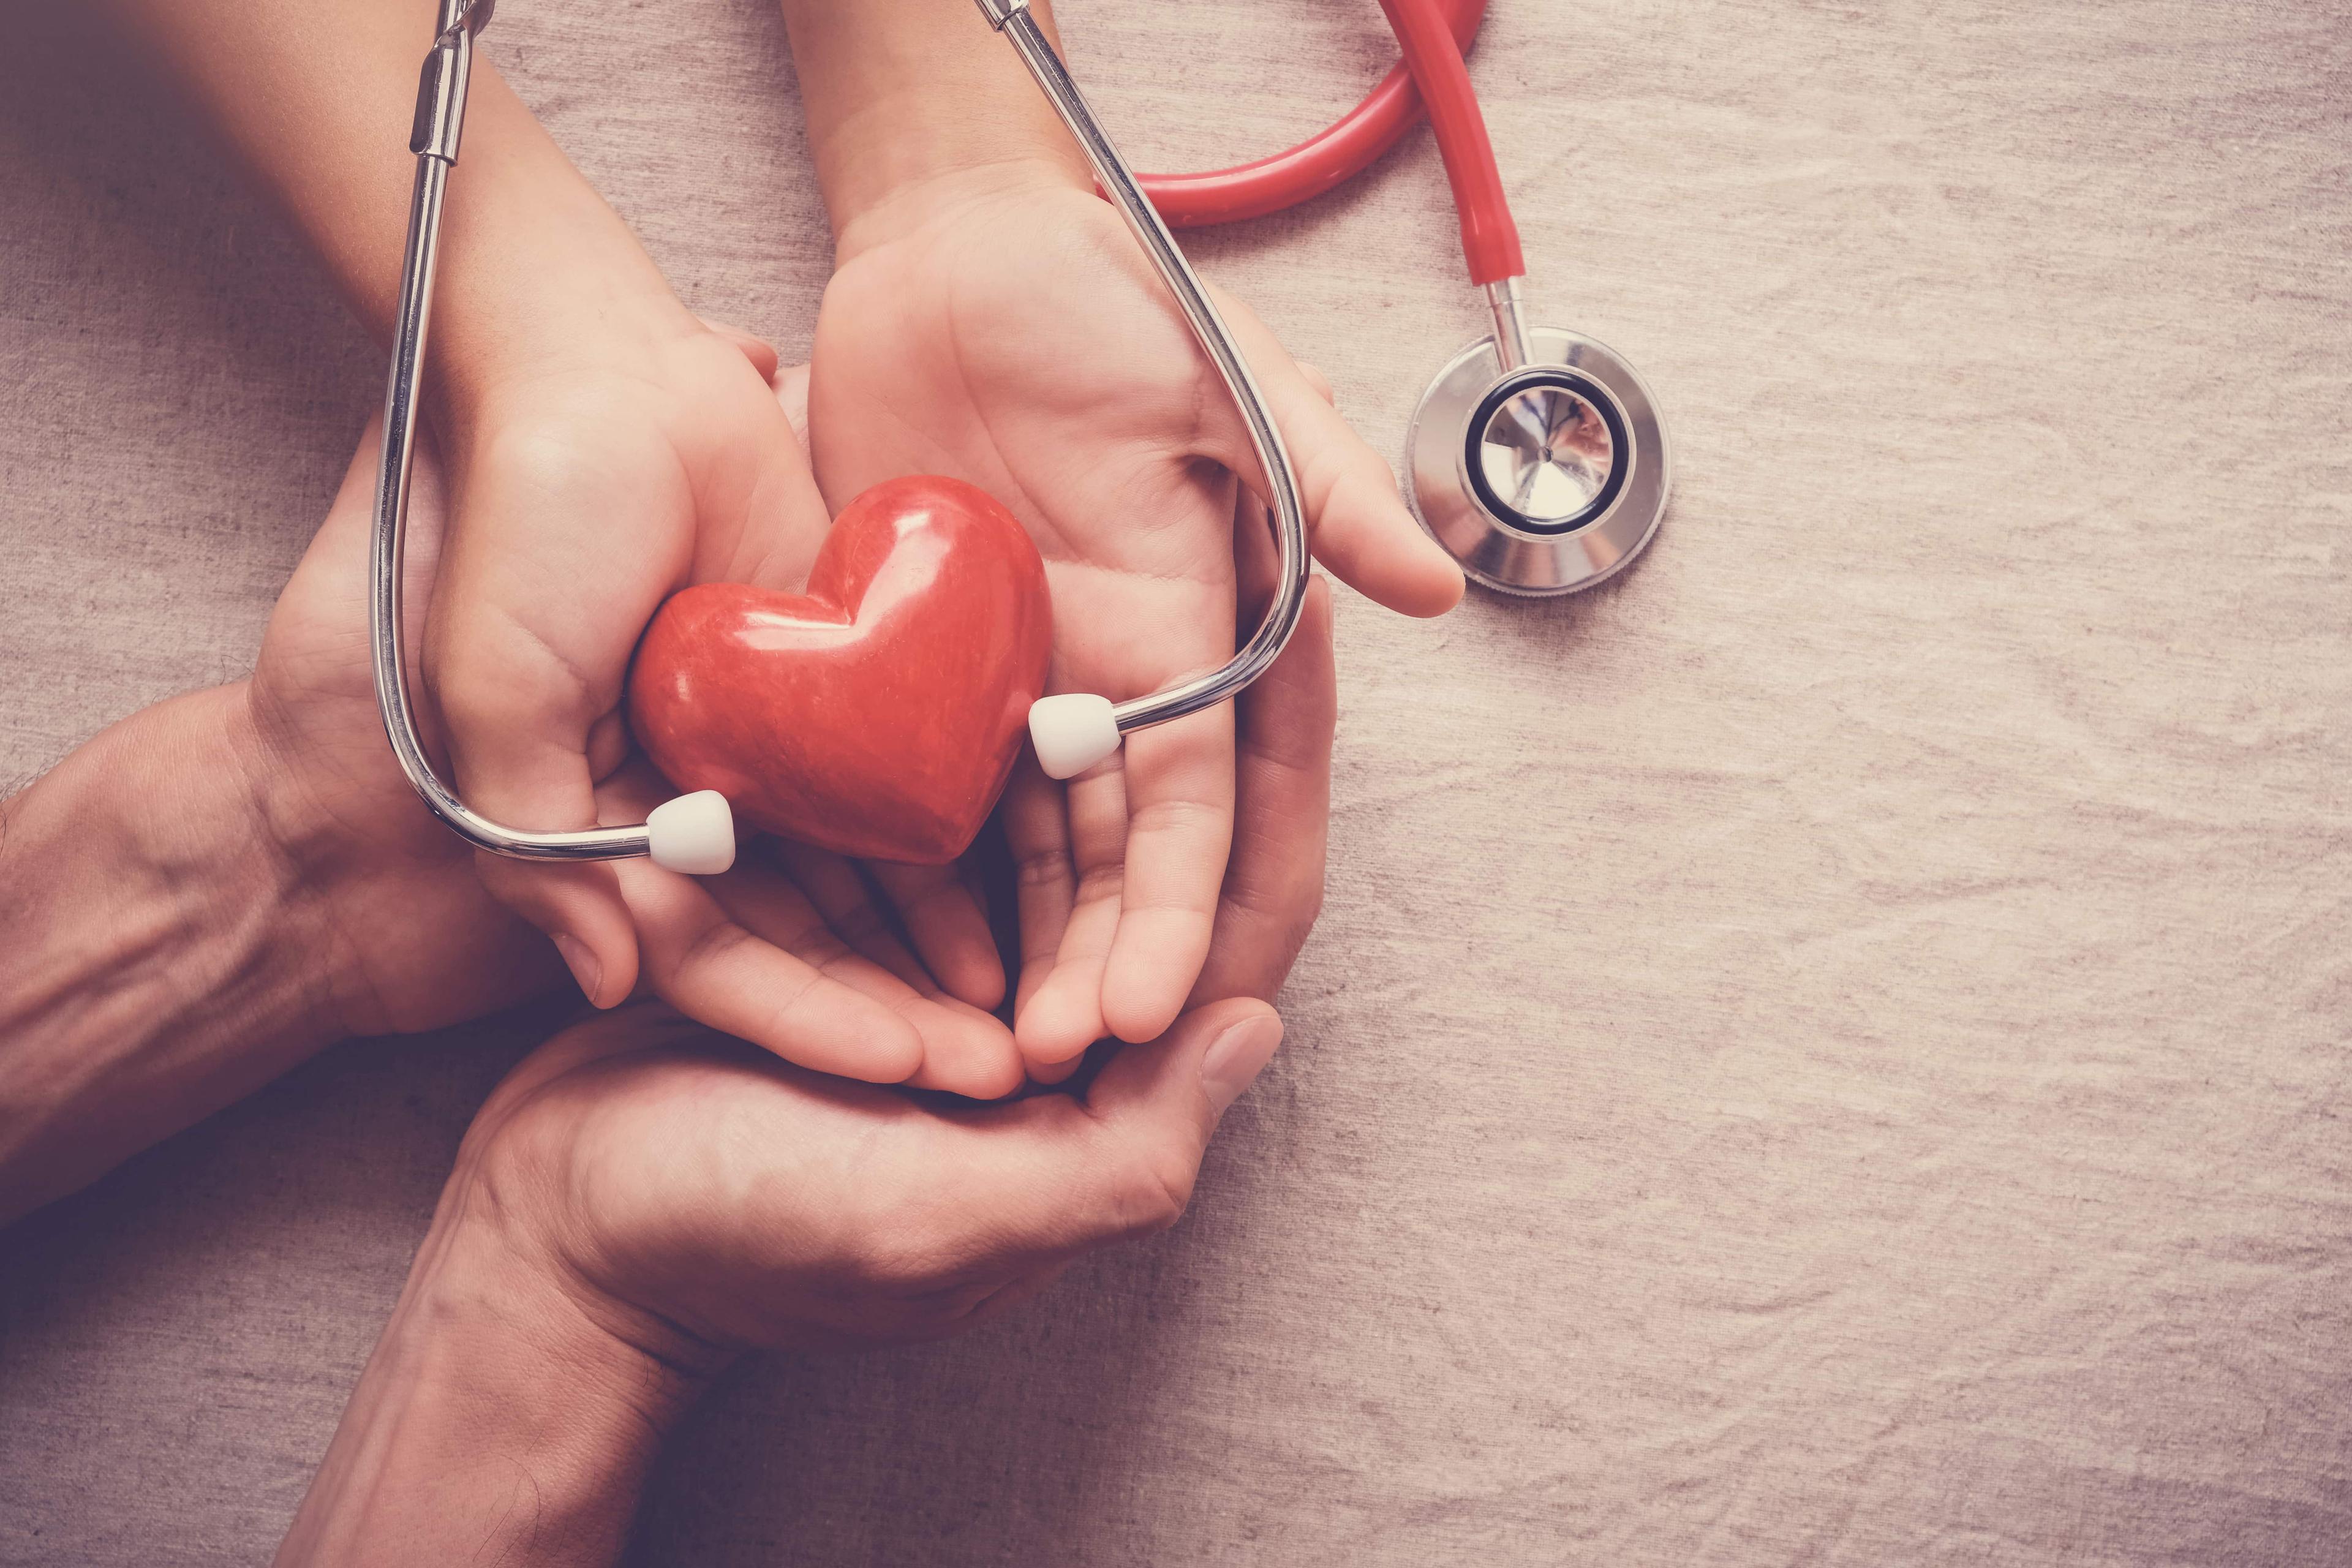 यह सुनिश्चित करने के लिए 10 हृदय परीक्षण कि आपका हृदय स्वस्थ है